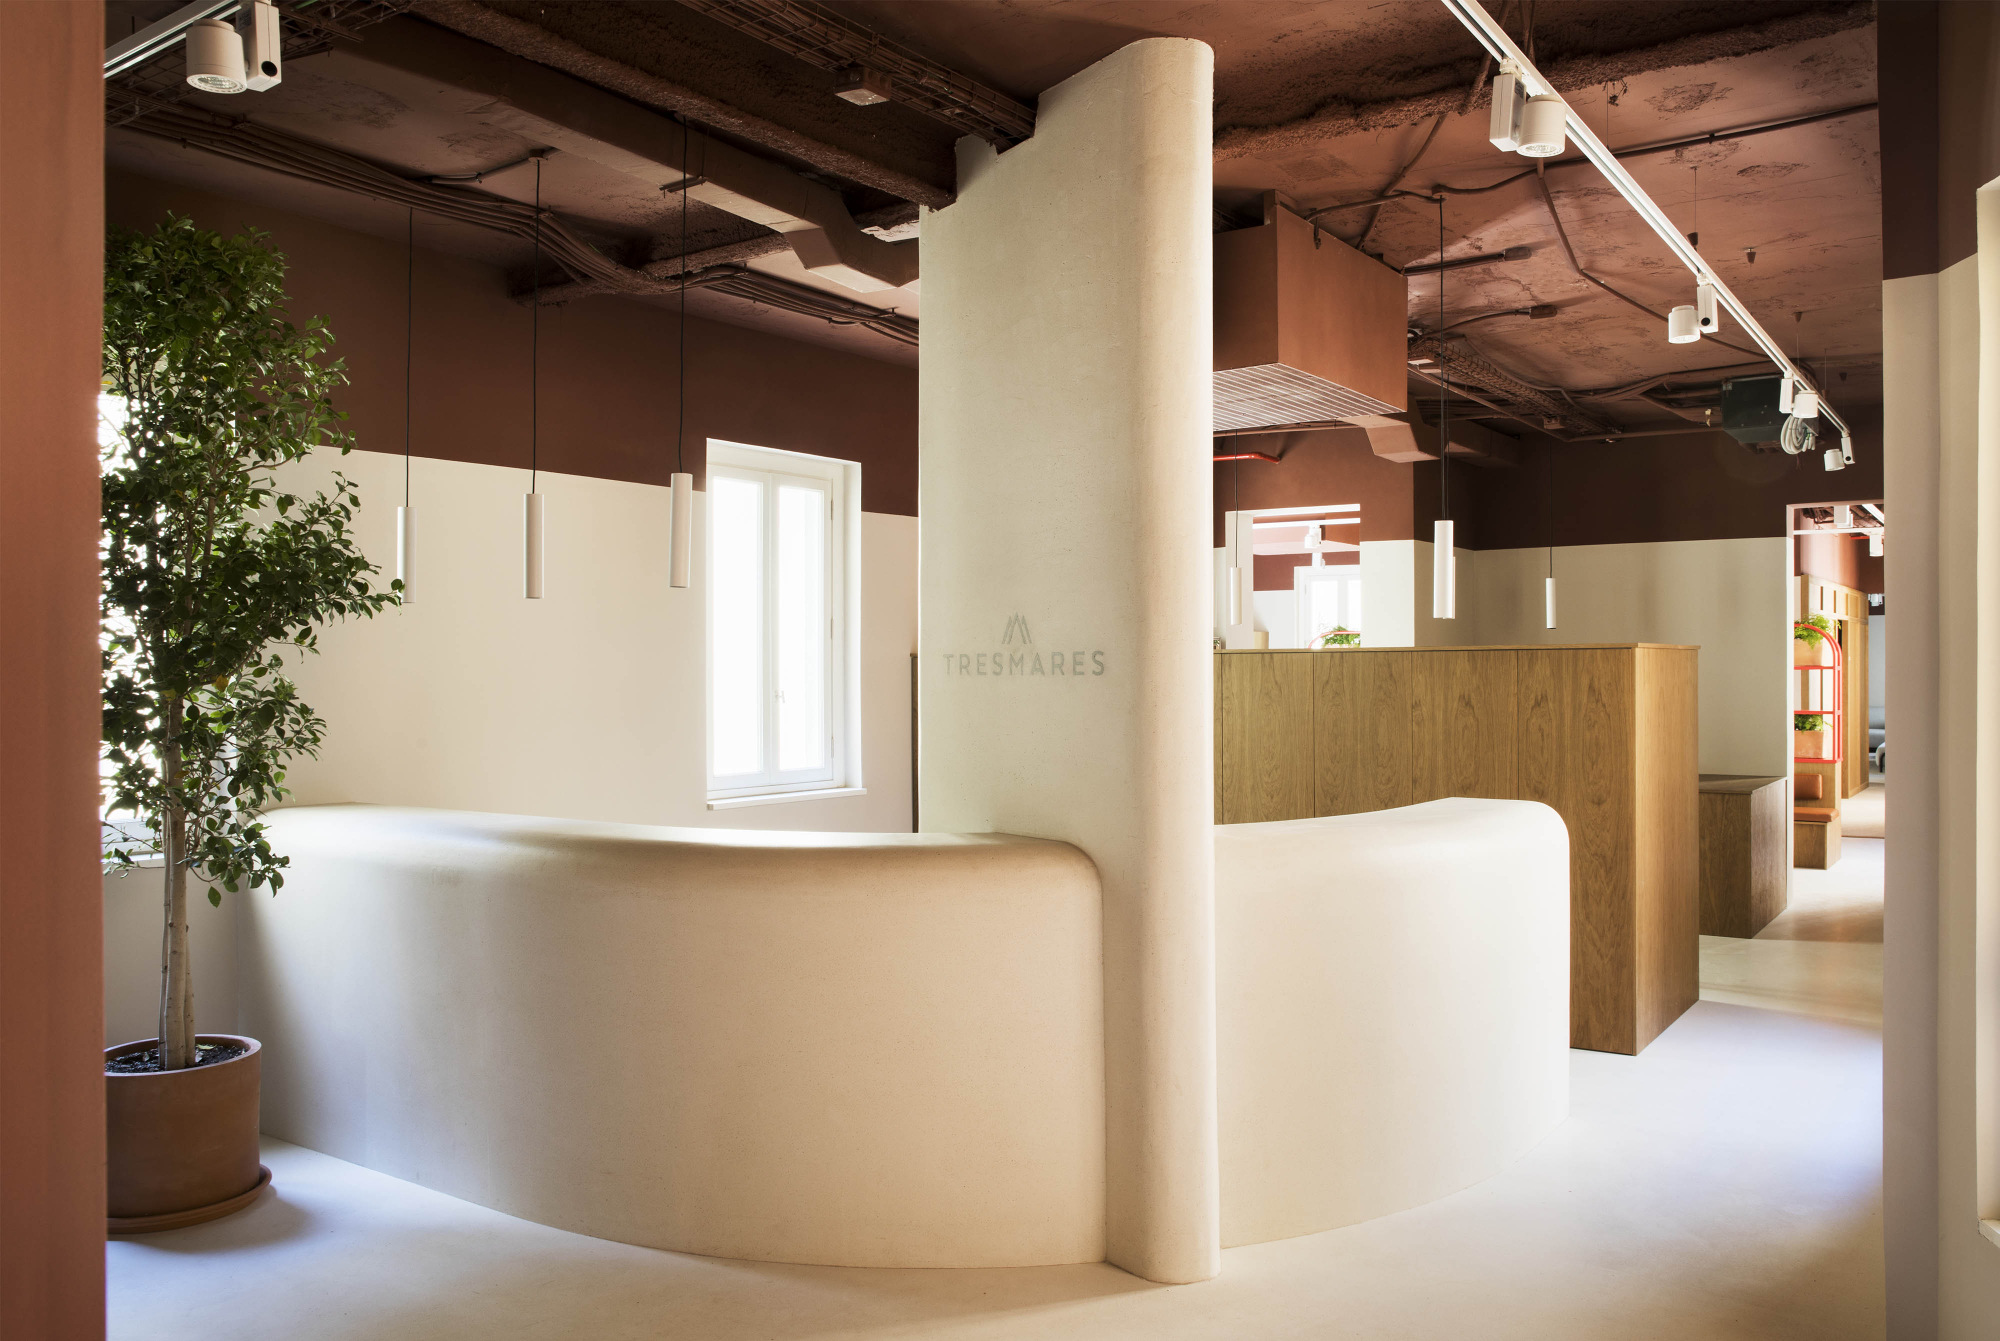 Tresmares首都办事处-马德里|ART-Arrakis | 建筑室内设计的创新与灵感